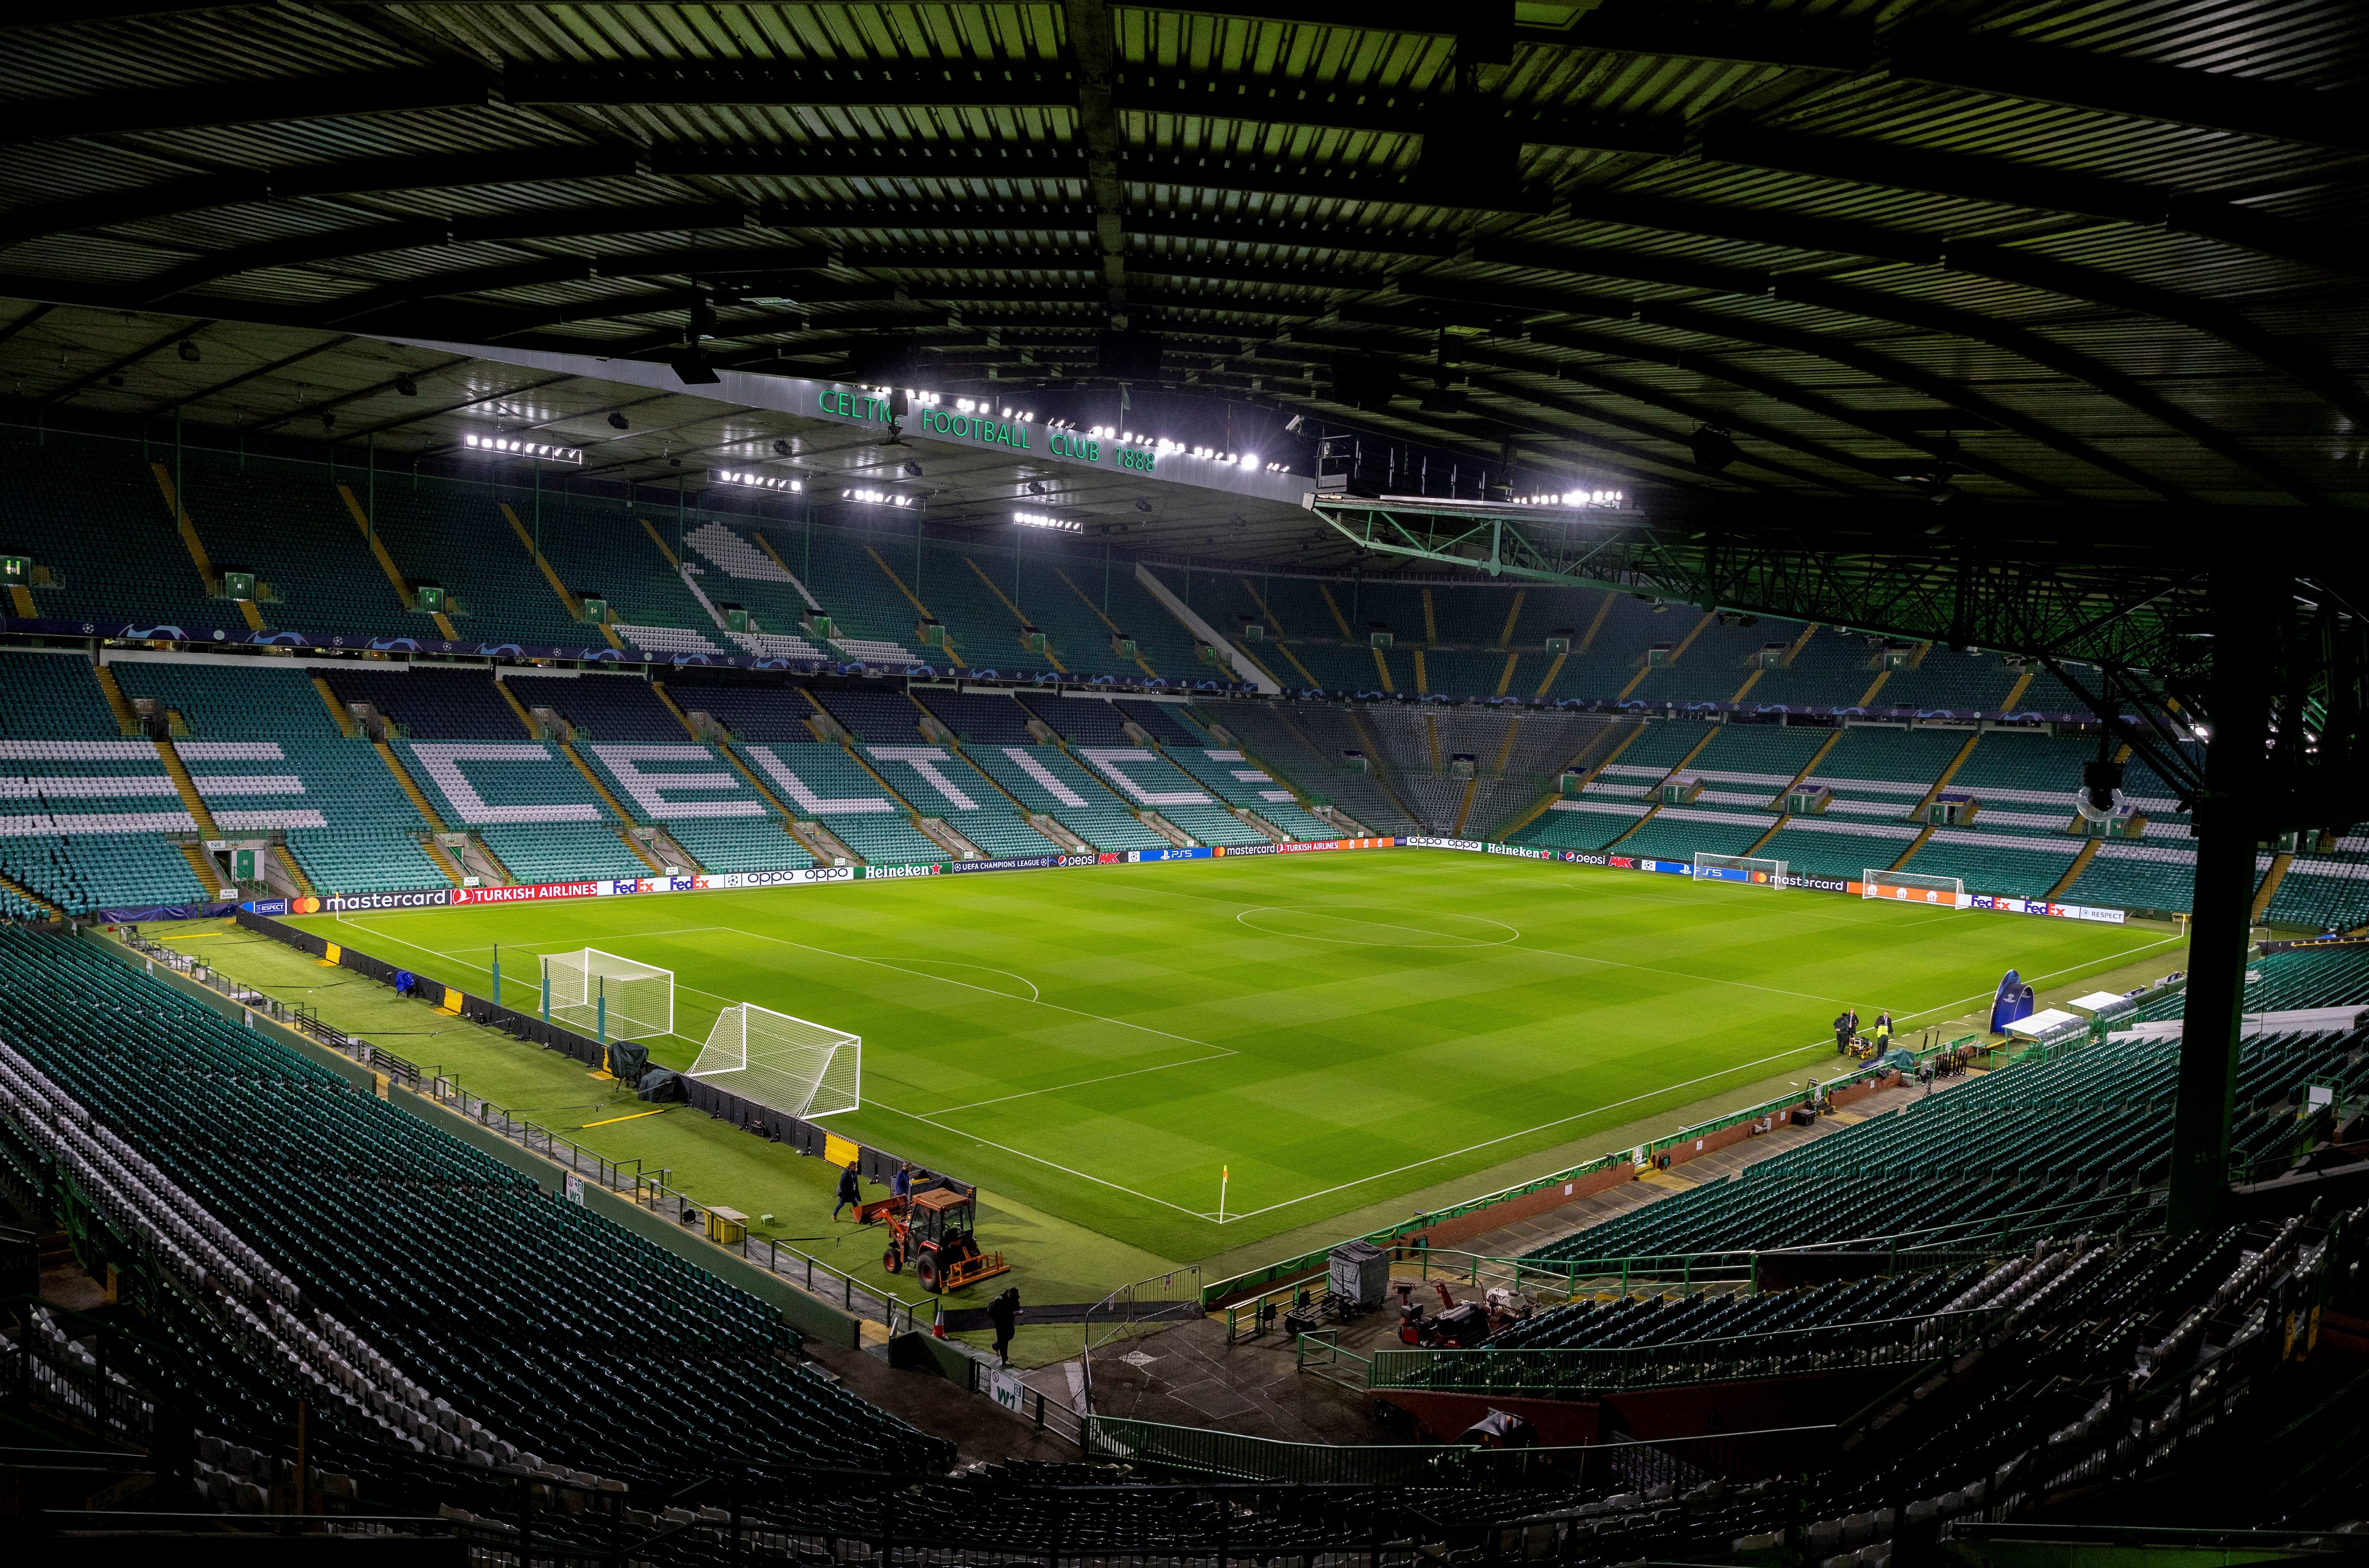 24/10/23  PANORAMICA DEL ESTADIO DEL GLASGOW
El Celtic Park es un estadio de Glasgow
